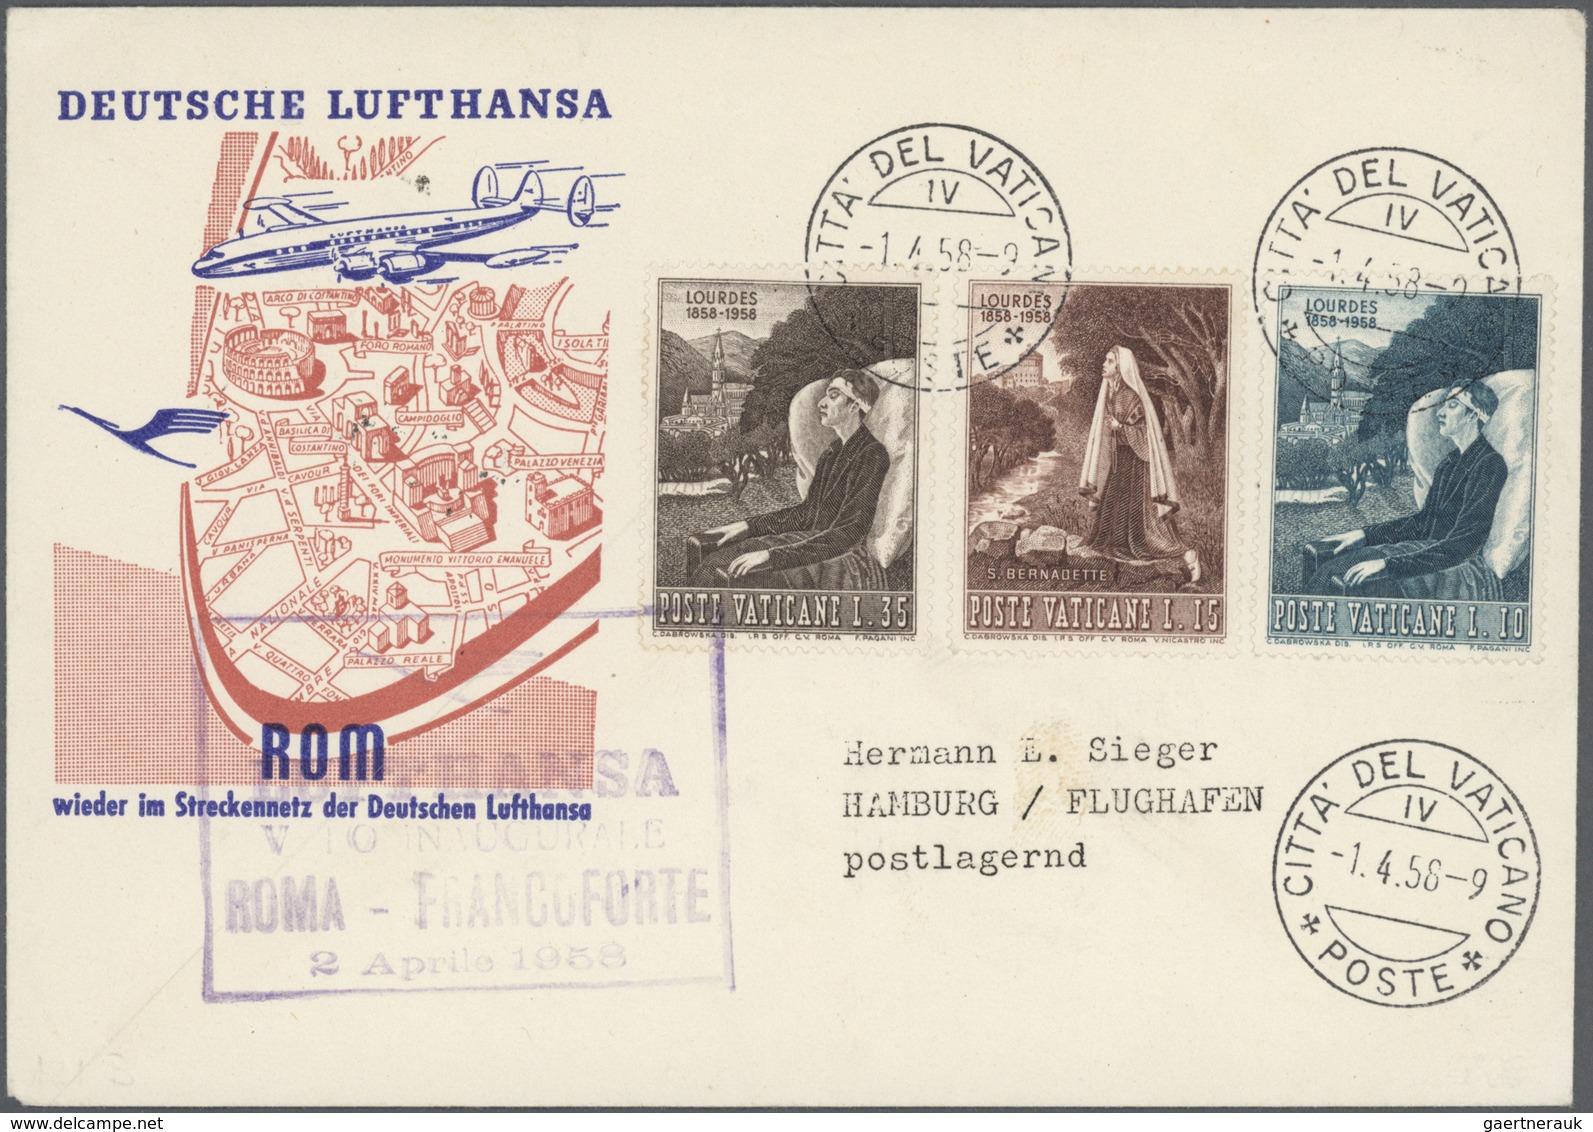 24809 Flugpost Deutschland: 1.4.55-1995, Flugpost "LH-LUFTHANSA", Erst-, Hin-und Rückflüge, fast alles ver